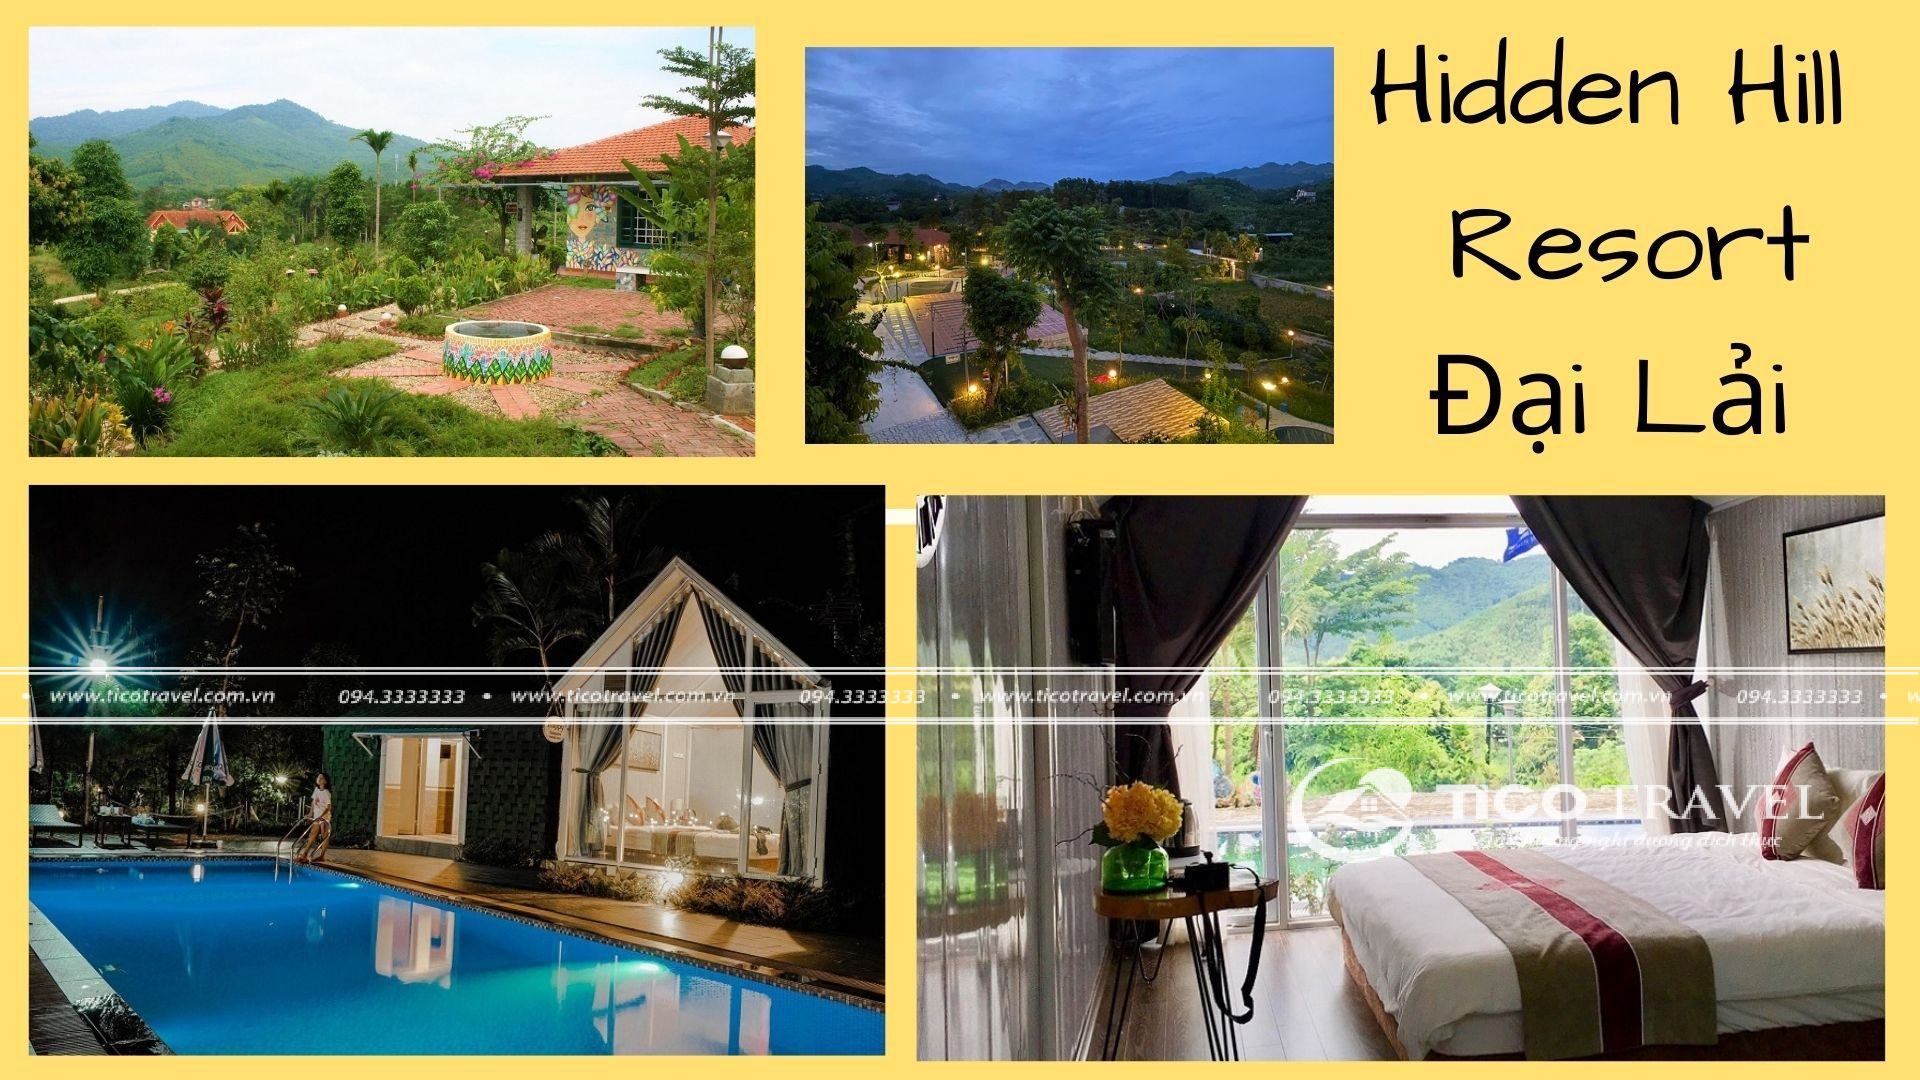 Ảnh chụp toàn cảnh tại Hidden Hill Resort - resort Tam Đảo giá rẻ